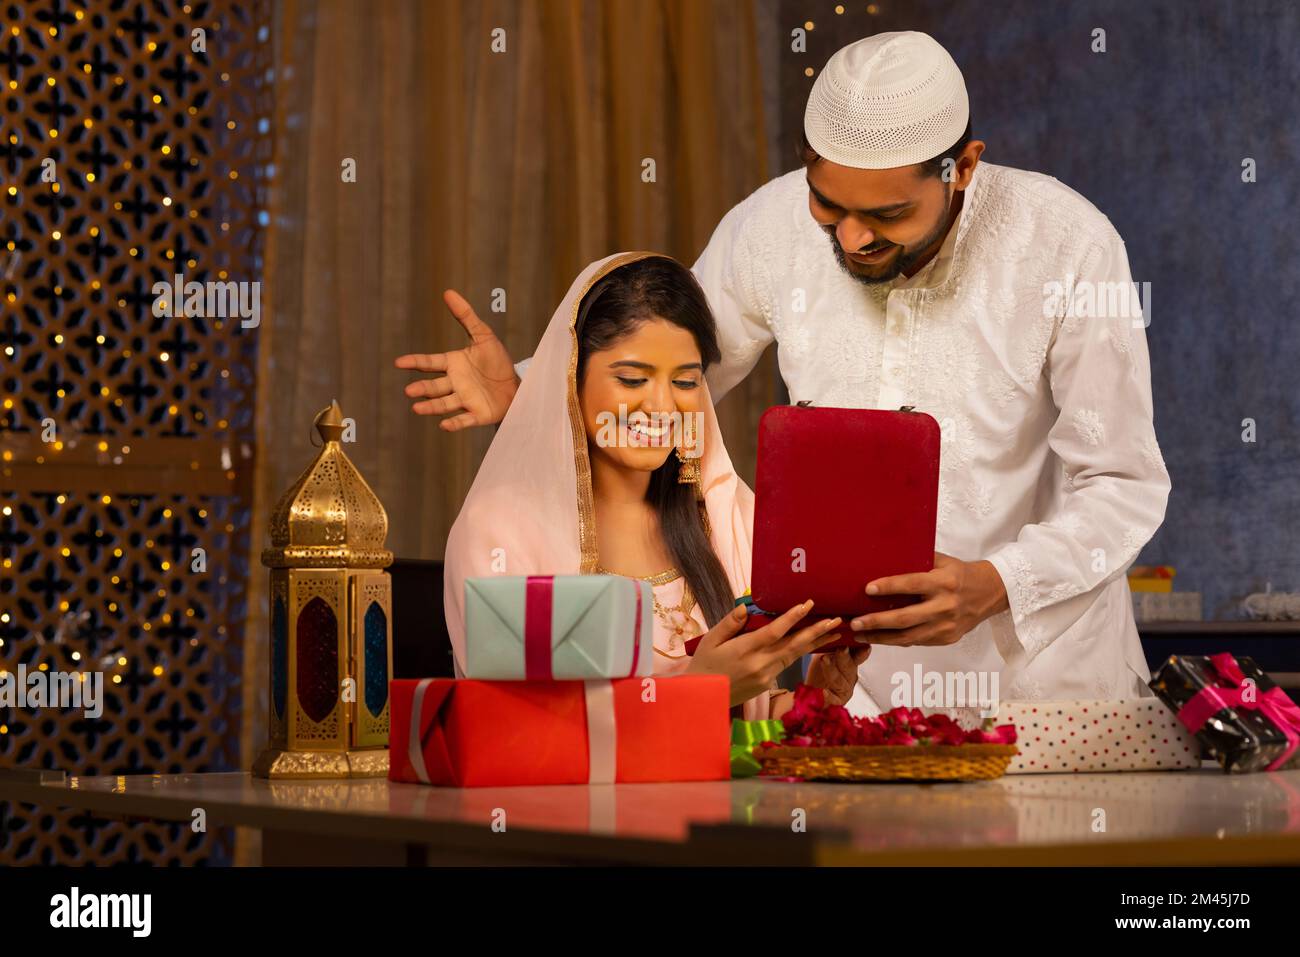 Muslimischer Mann, der seiner Frau während Eid-UL-Fitr ein Geschenk überreichte Stockfoto